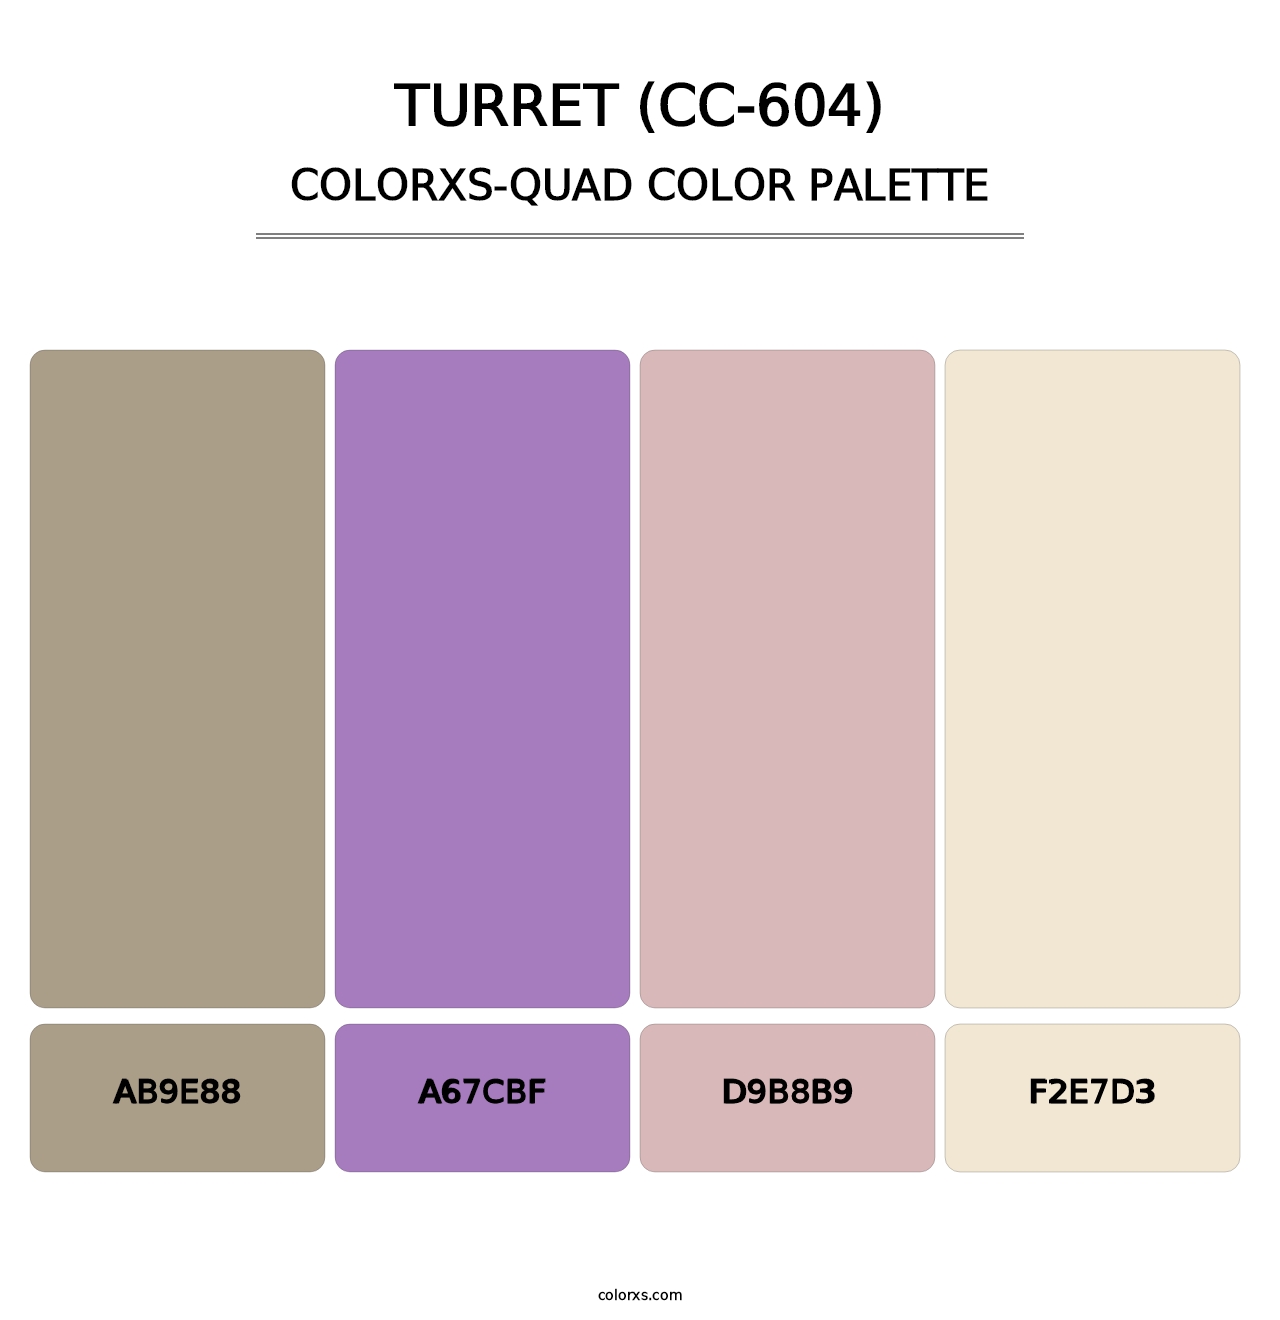 Turret (CC-604) - Colorxs Quad Palette